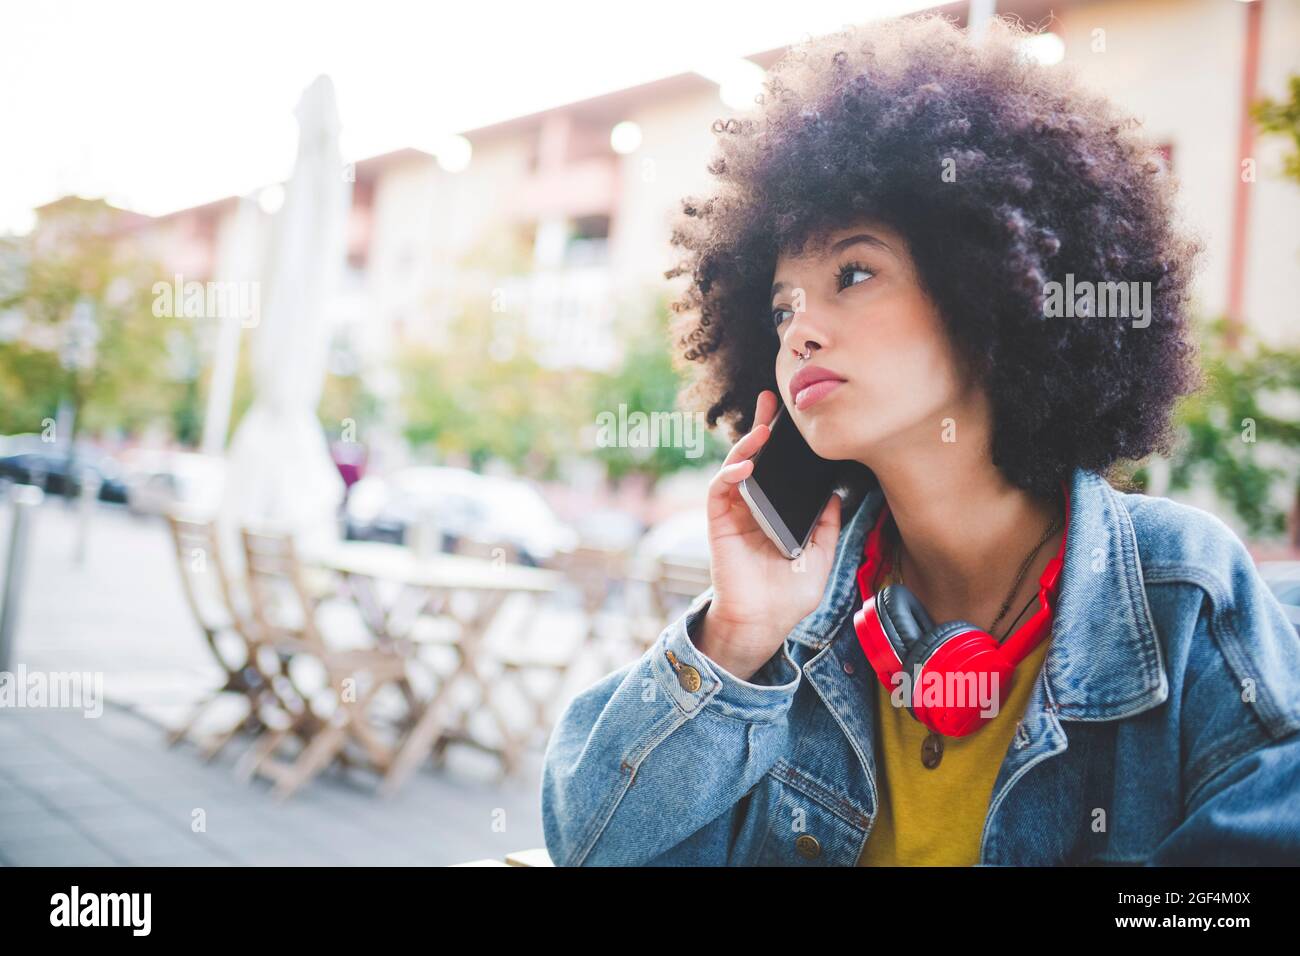 Junge Frau mit Afro-Frisur am Telefon in der Stadt Stockfoto